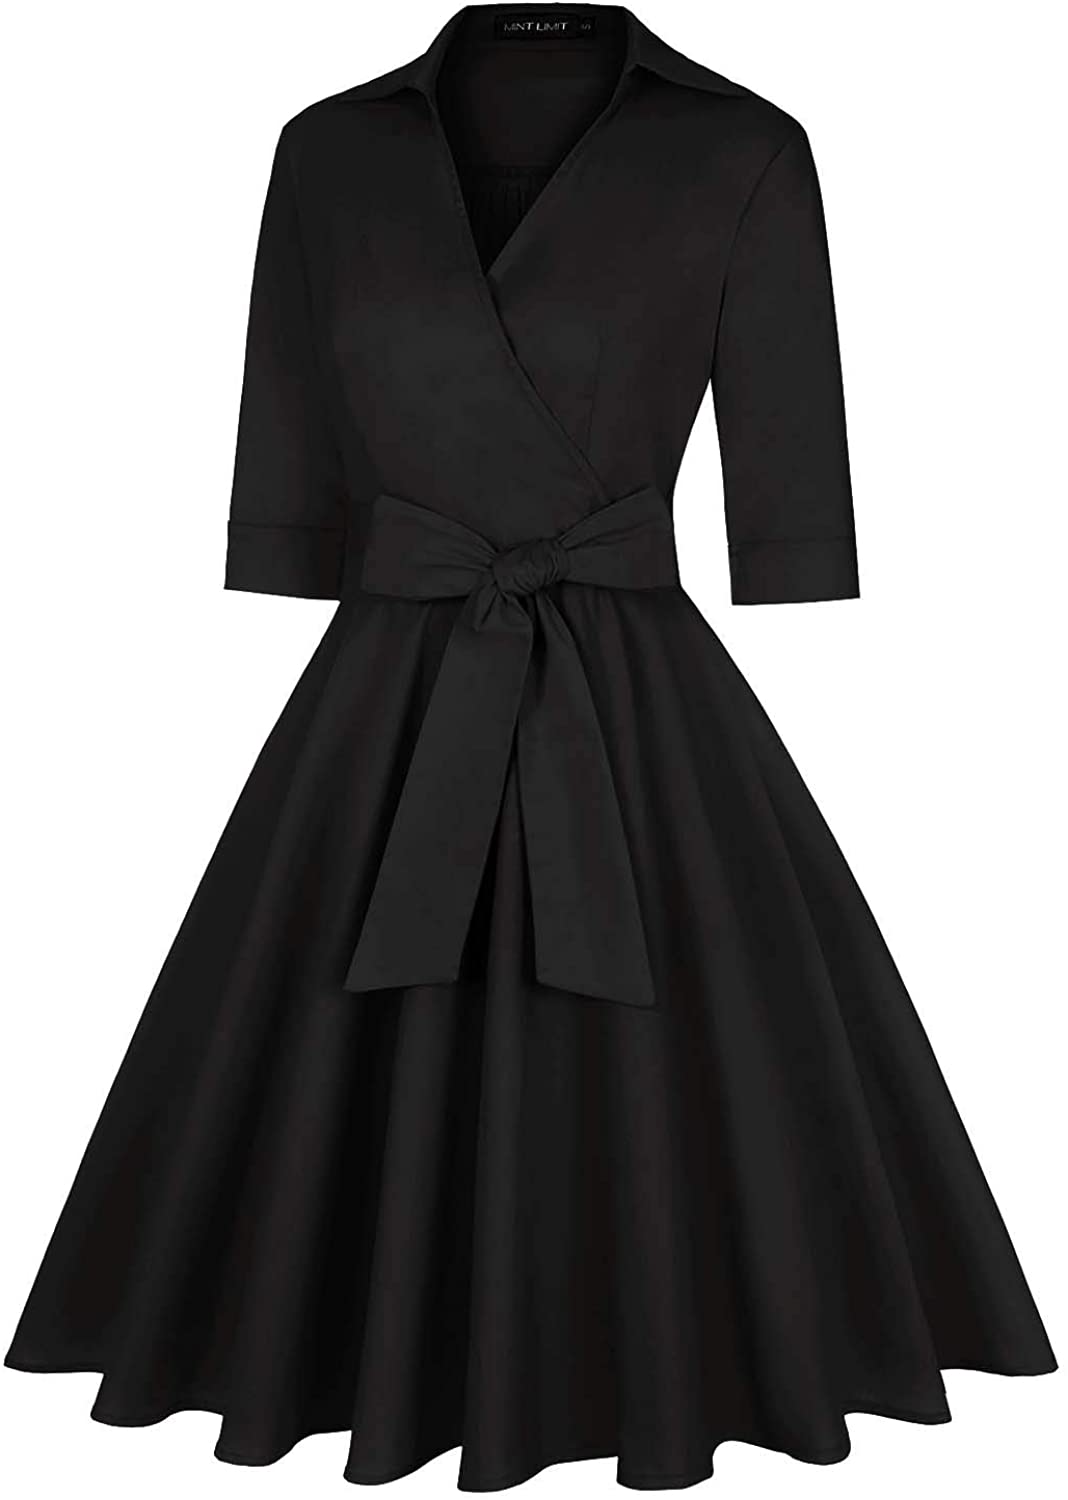 MINTLIMIT Women's 1950s Deep V-Neck Vintage Dresses, Plain Black, Size ...